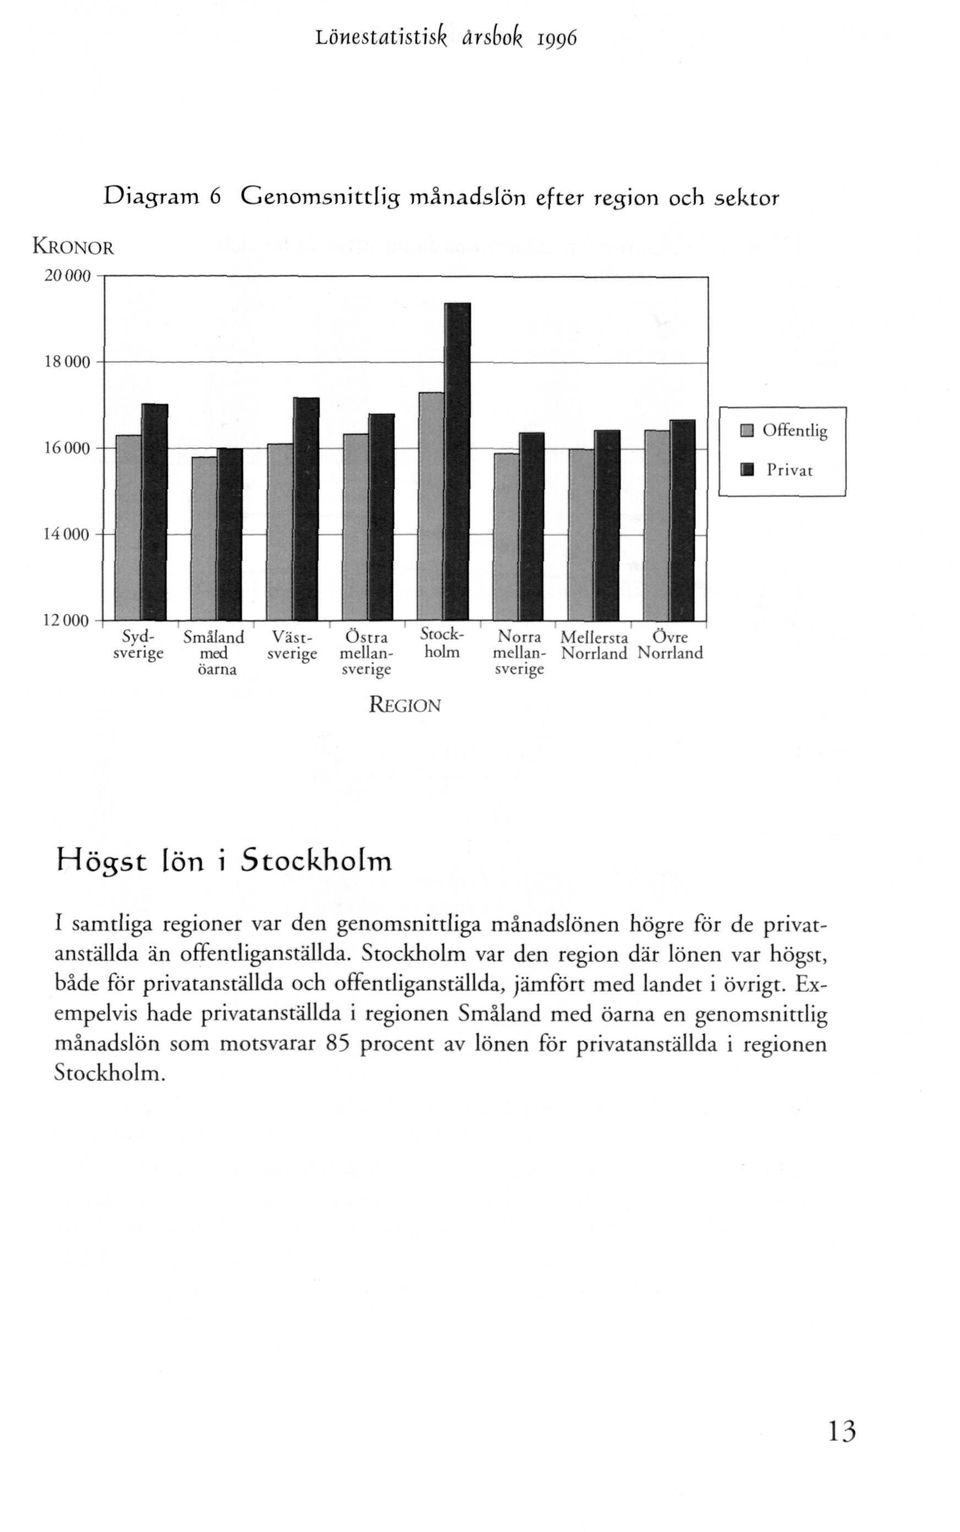 Stockholm var den region där lönen var högst, både för privatanställda och offentliganställda, jämfört med landet i övrigt.